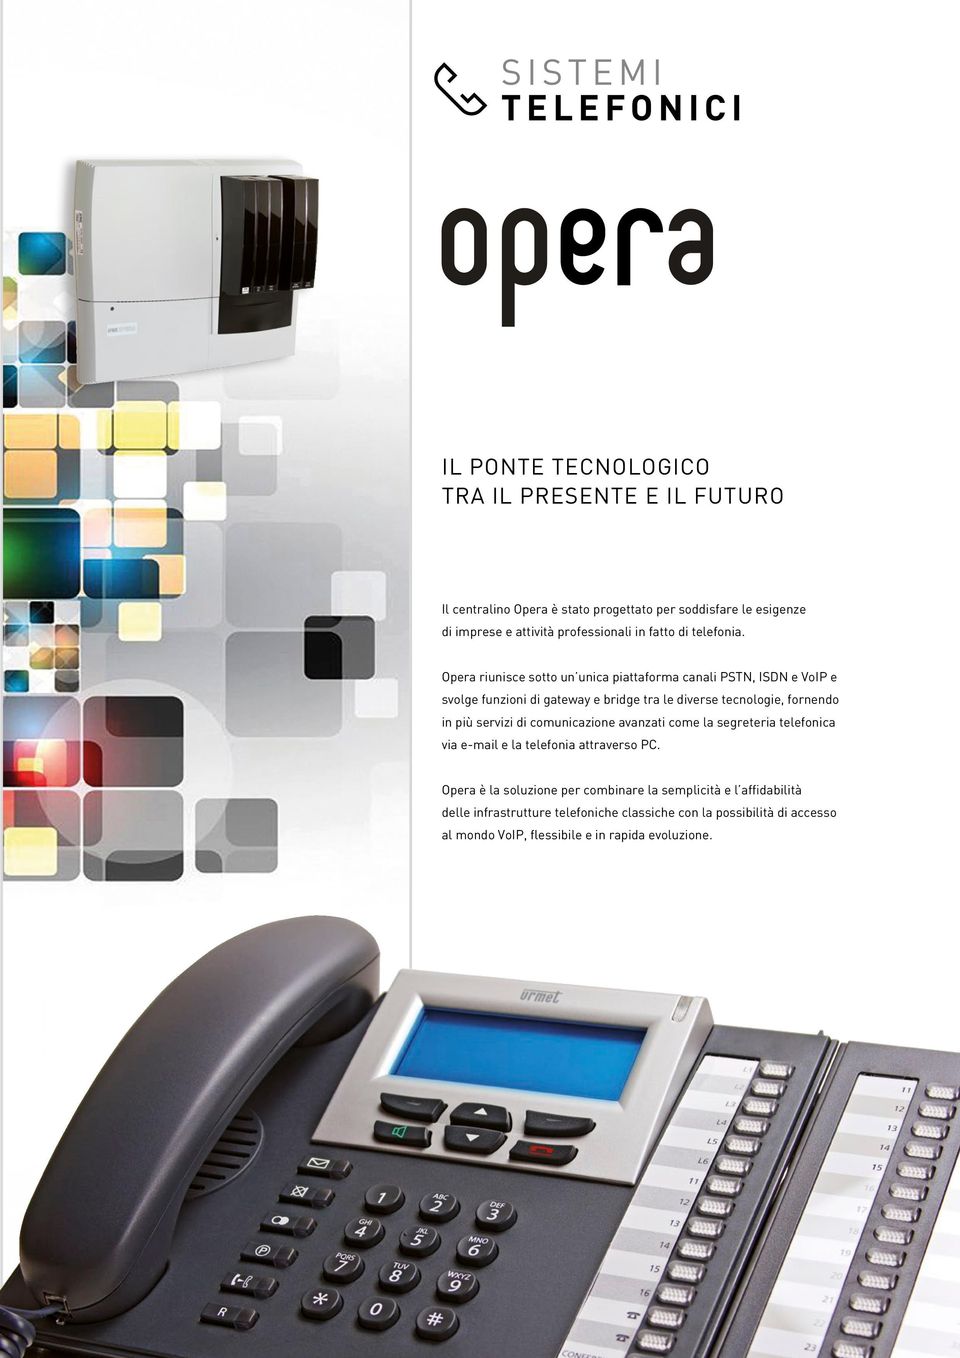 Opera riunisce sotto un unica piattaforma canali PSTN, ISDN e VoIP e svolge funzioni di gateway e bridge tra le diverse tecnologie, fornendo in più servizi di